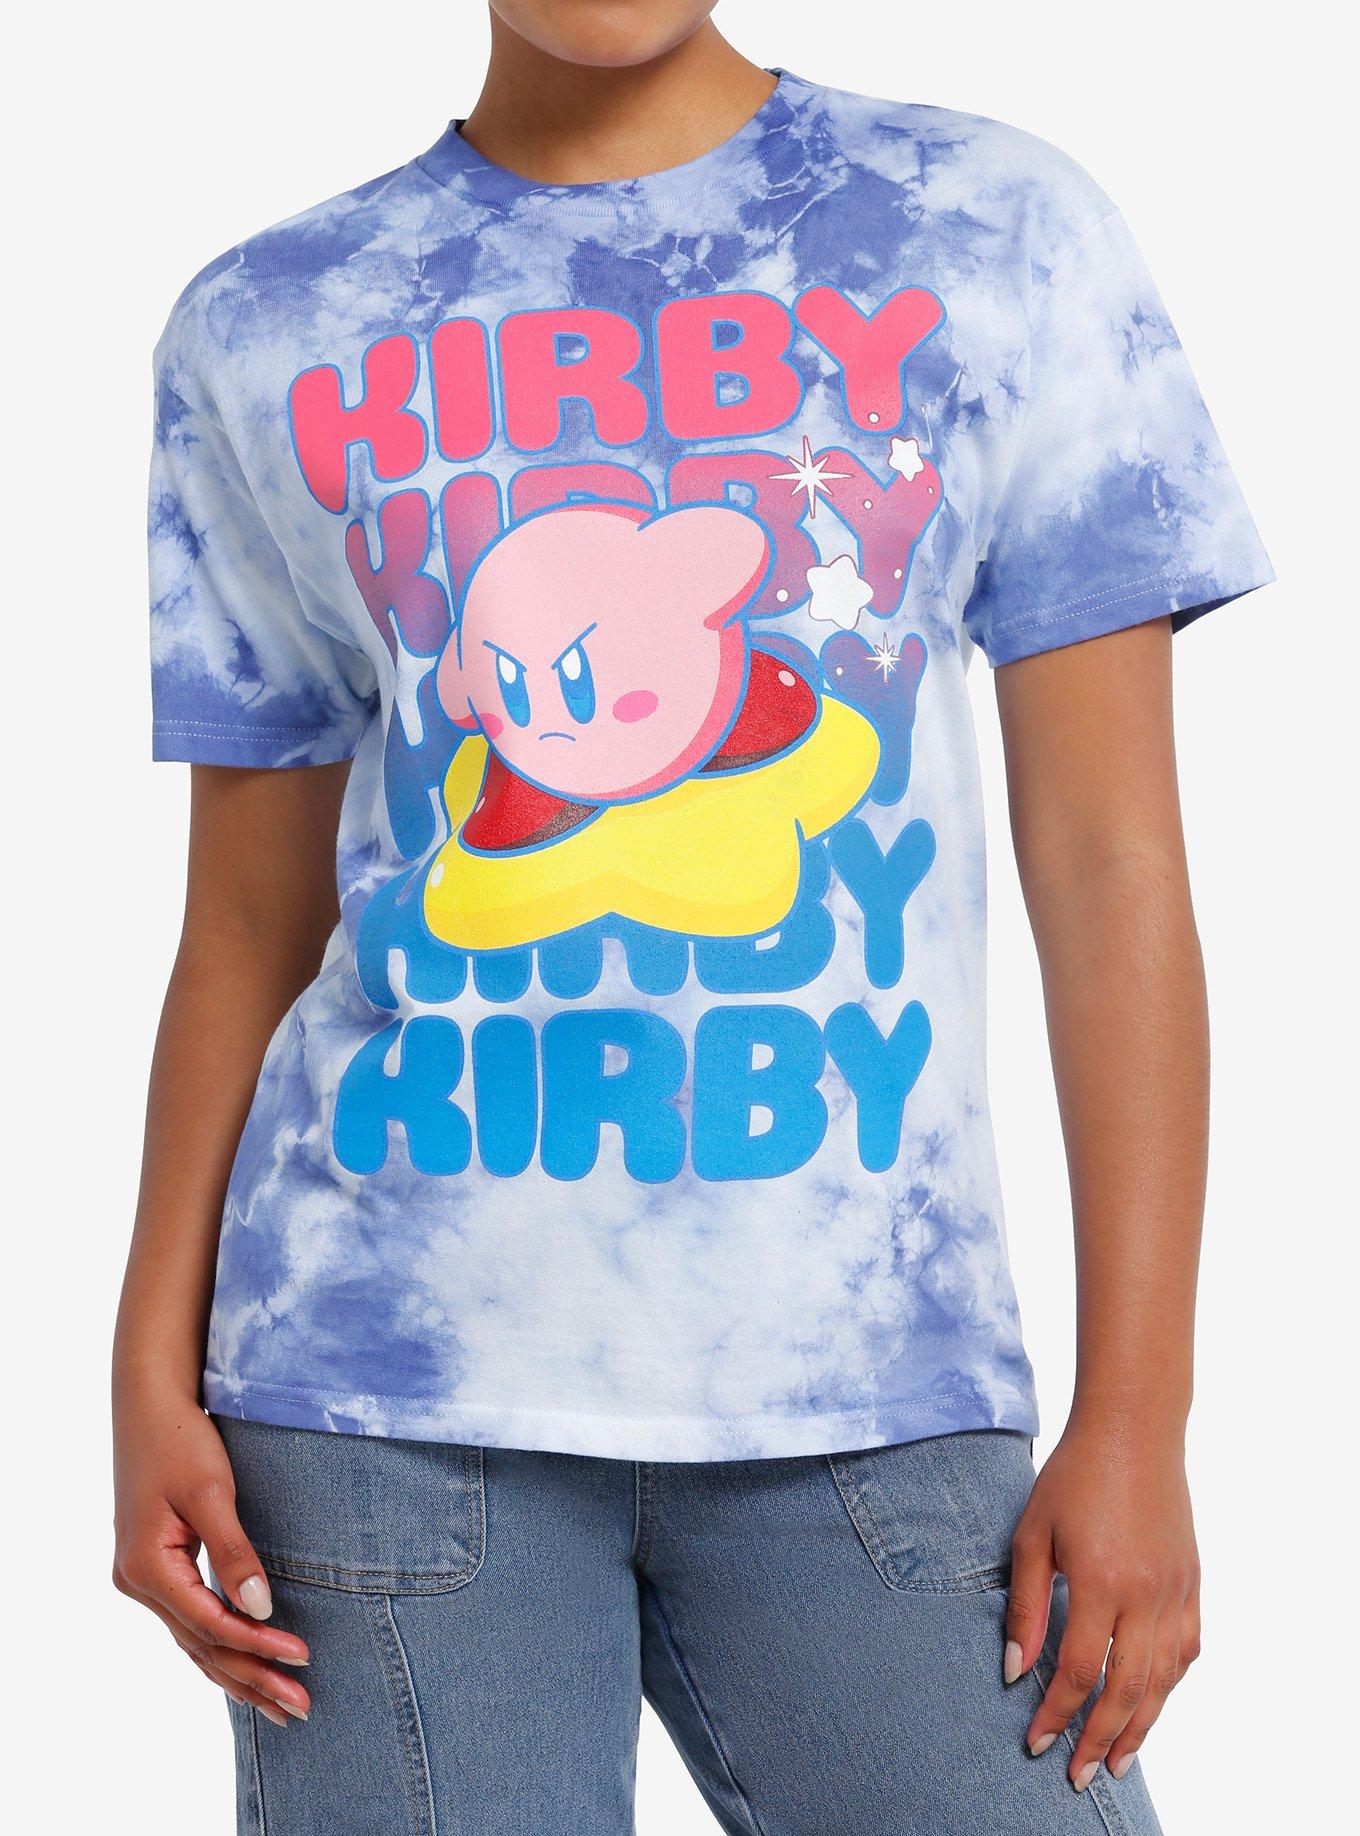 Kirby Warp Star Tie-Dye Boyfriend Fit Girls T-Shirt, , hi-res